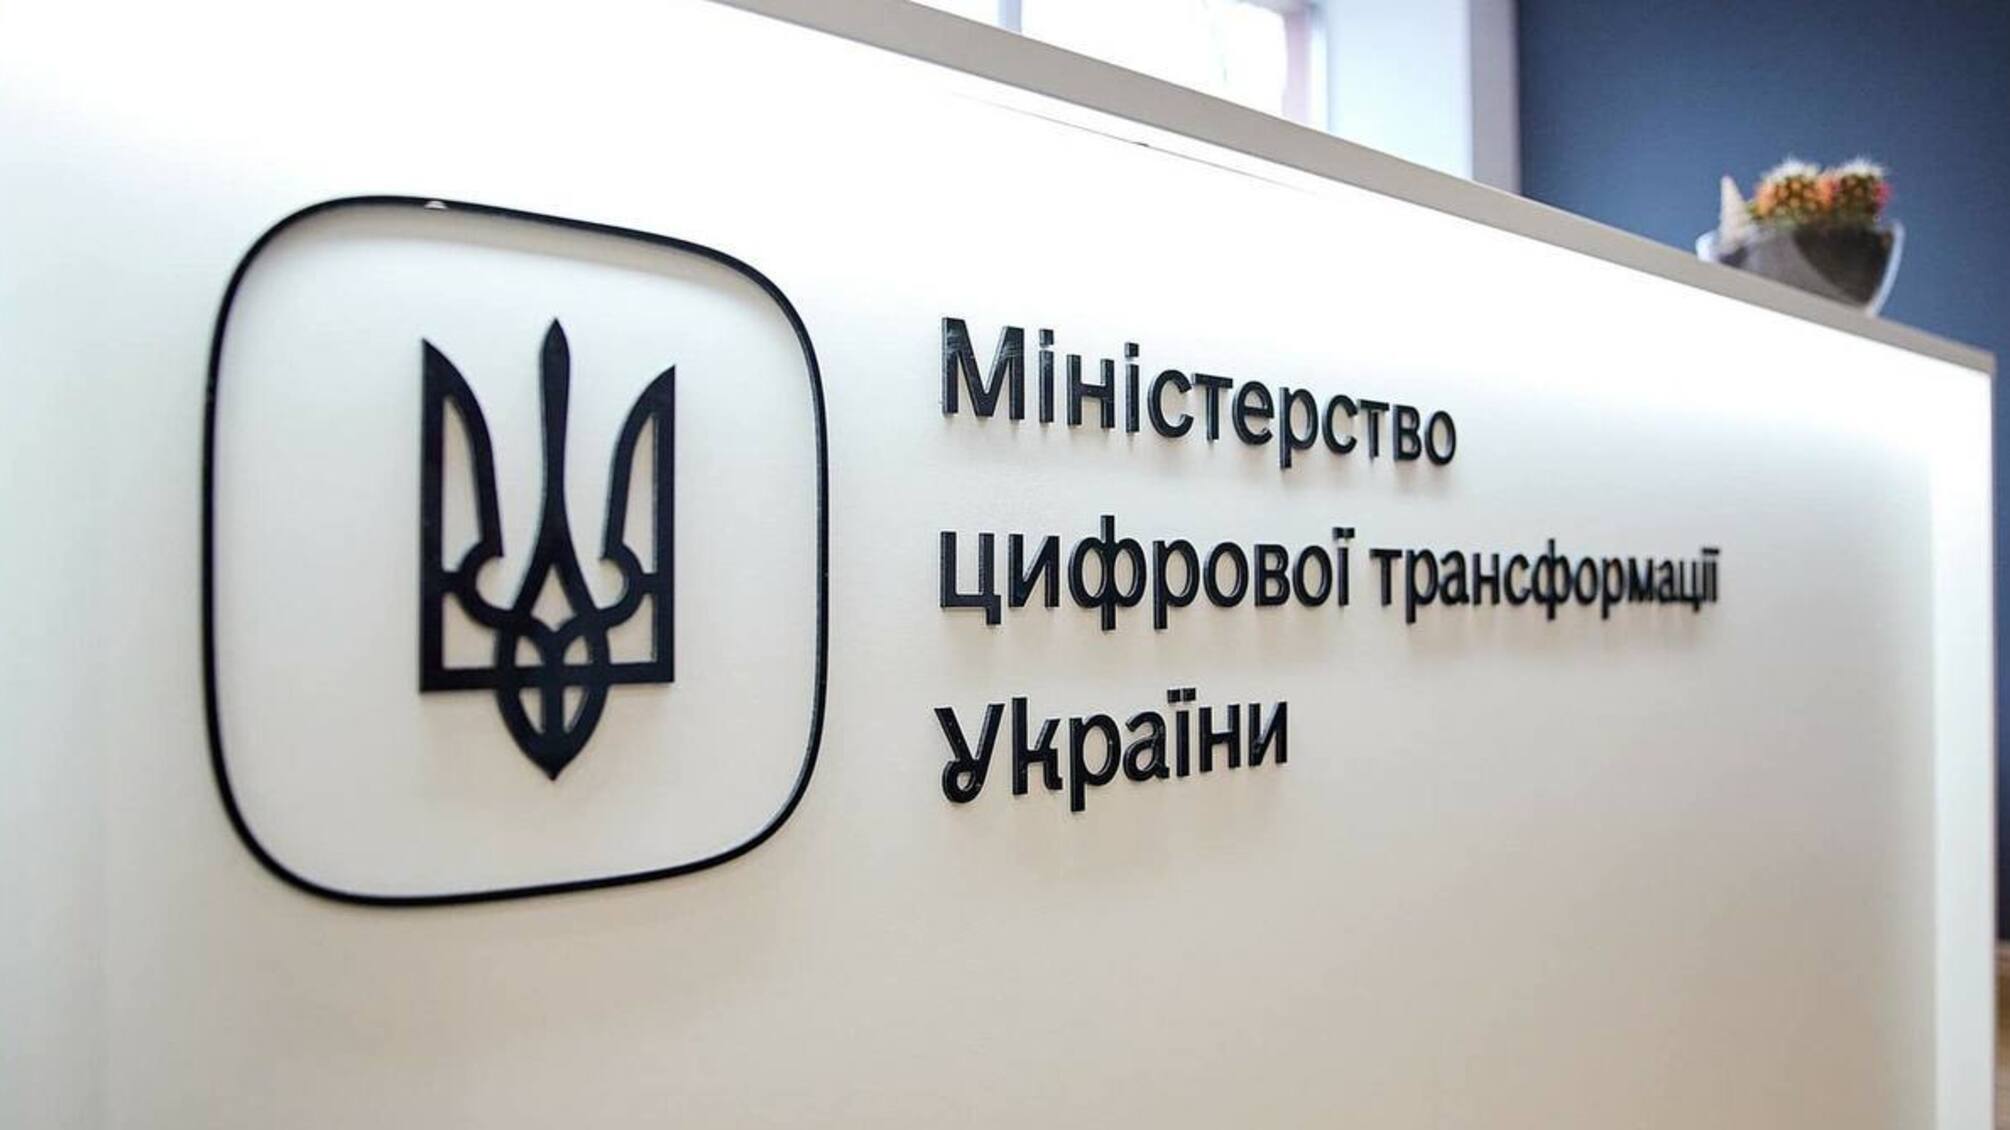  Міністерство цифрової трансформації України